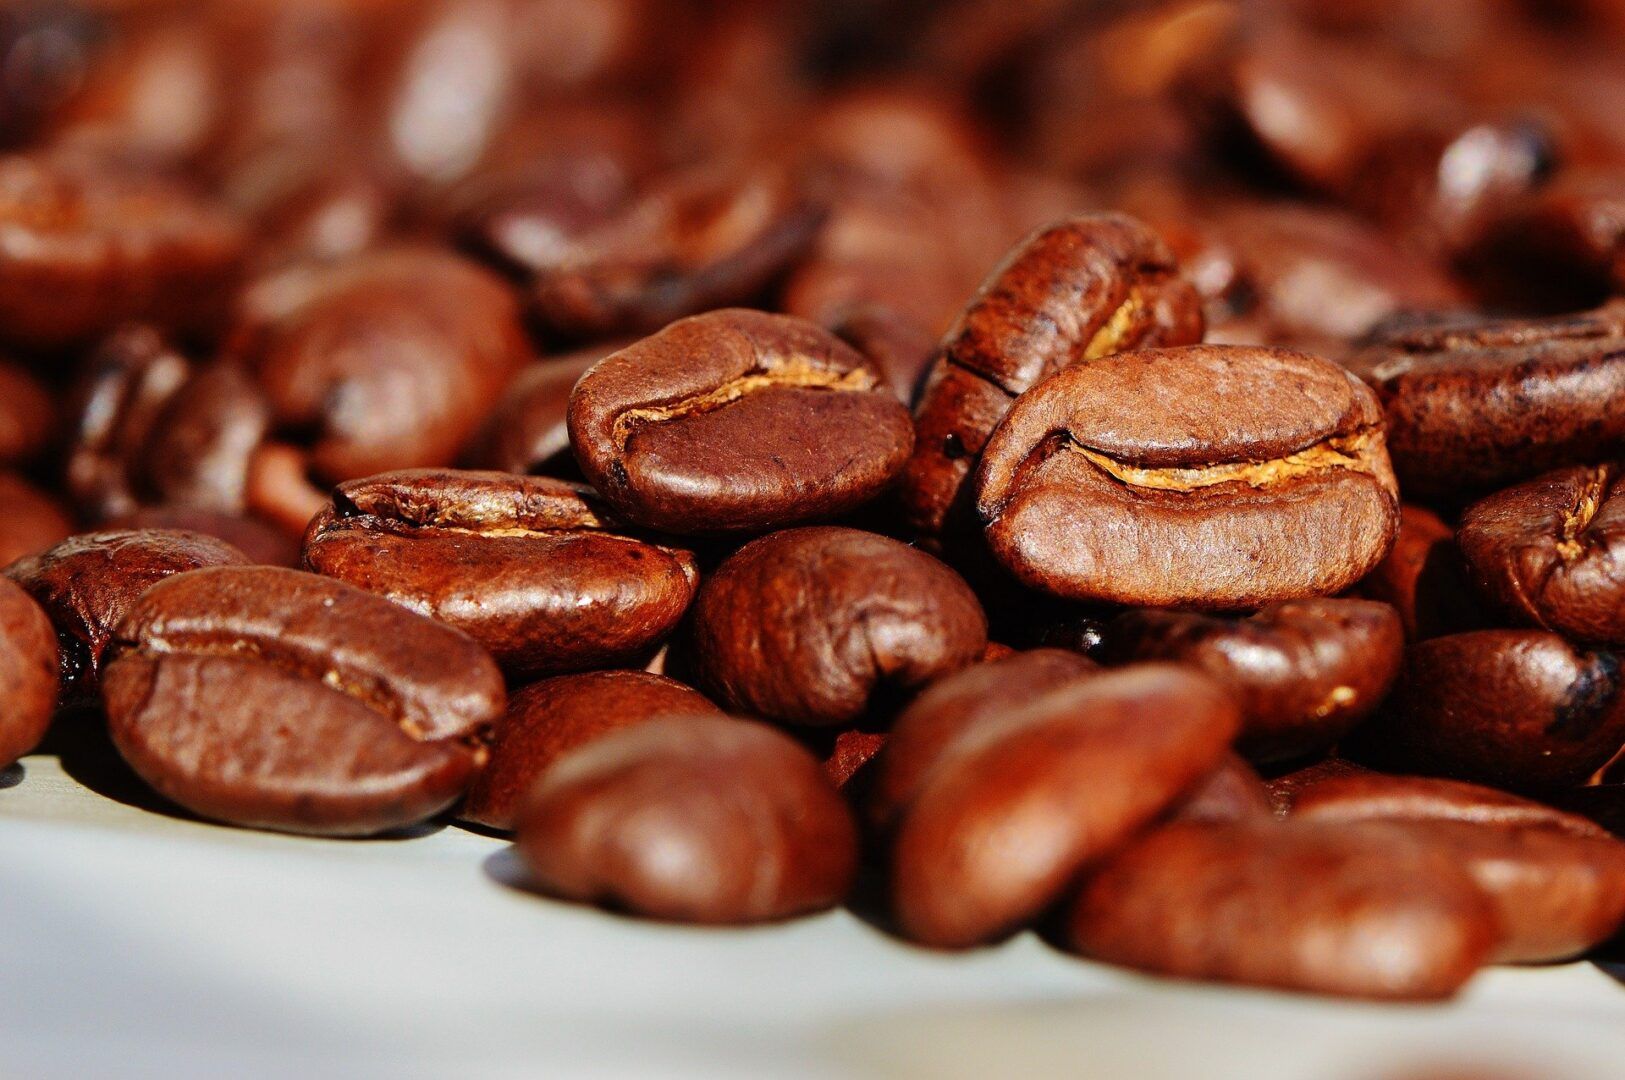 Efeitos da cafeína - conheça as reações positivas e negativas